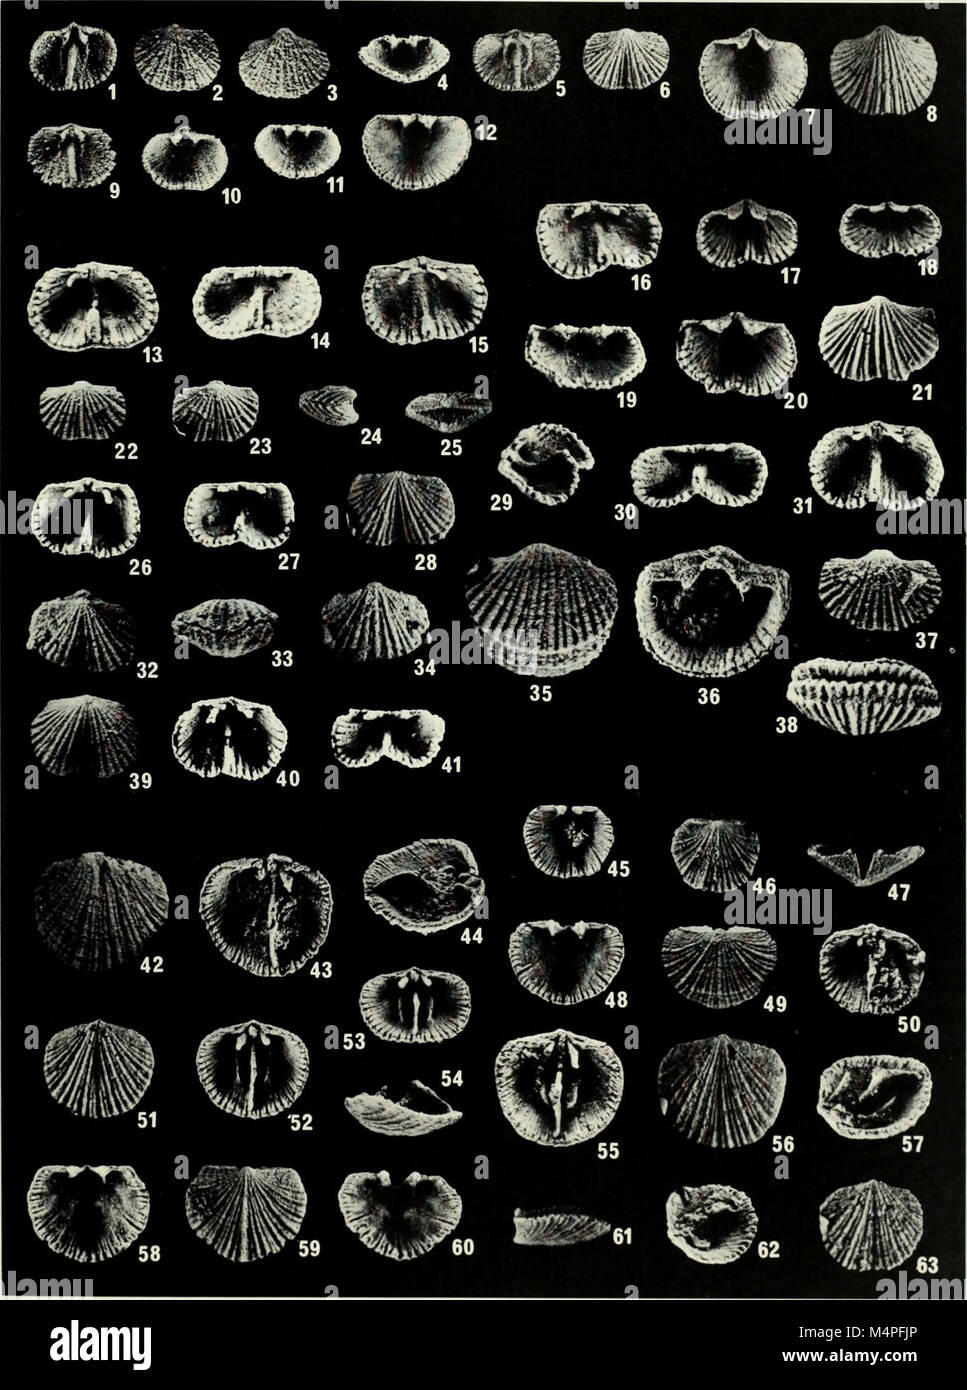 E Brachiopoda biostratigraphy del Silurian-Devonian Delorme Formazione nel distretto di Mackenzie, lo Yukon (1984) (20398765052) Foto Stock